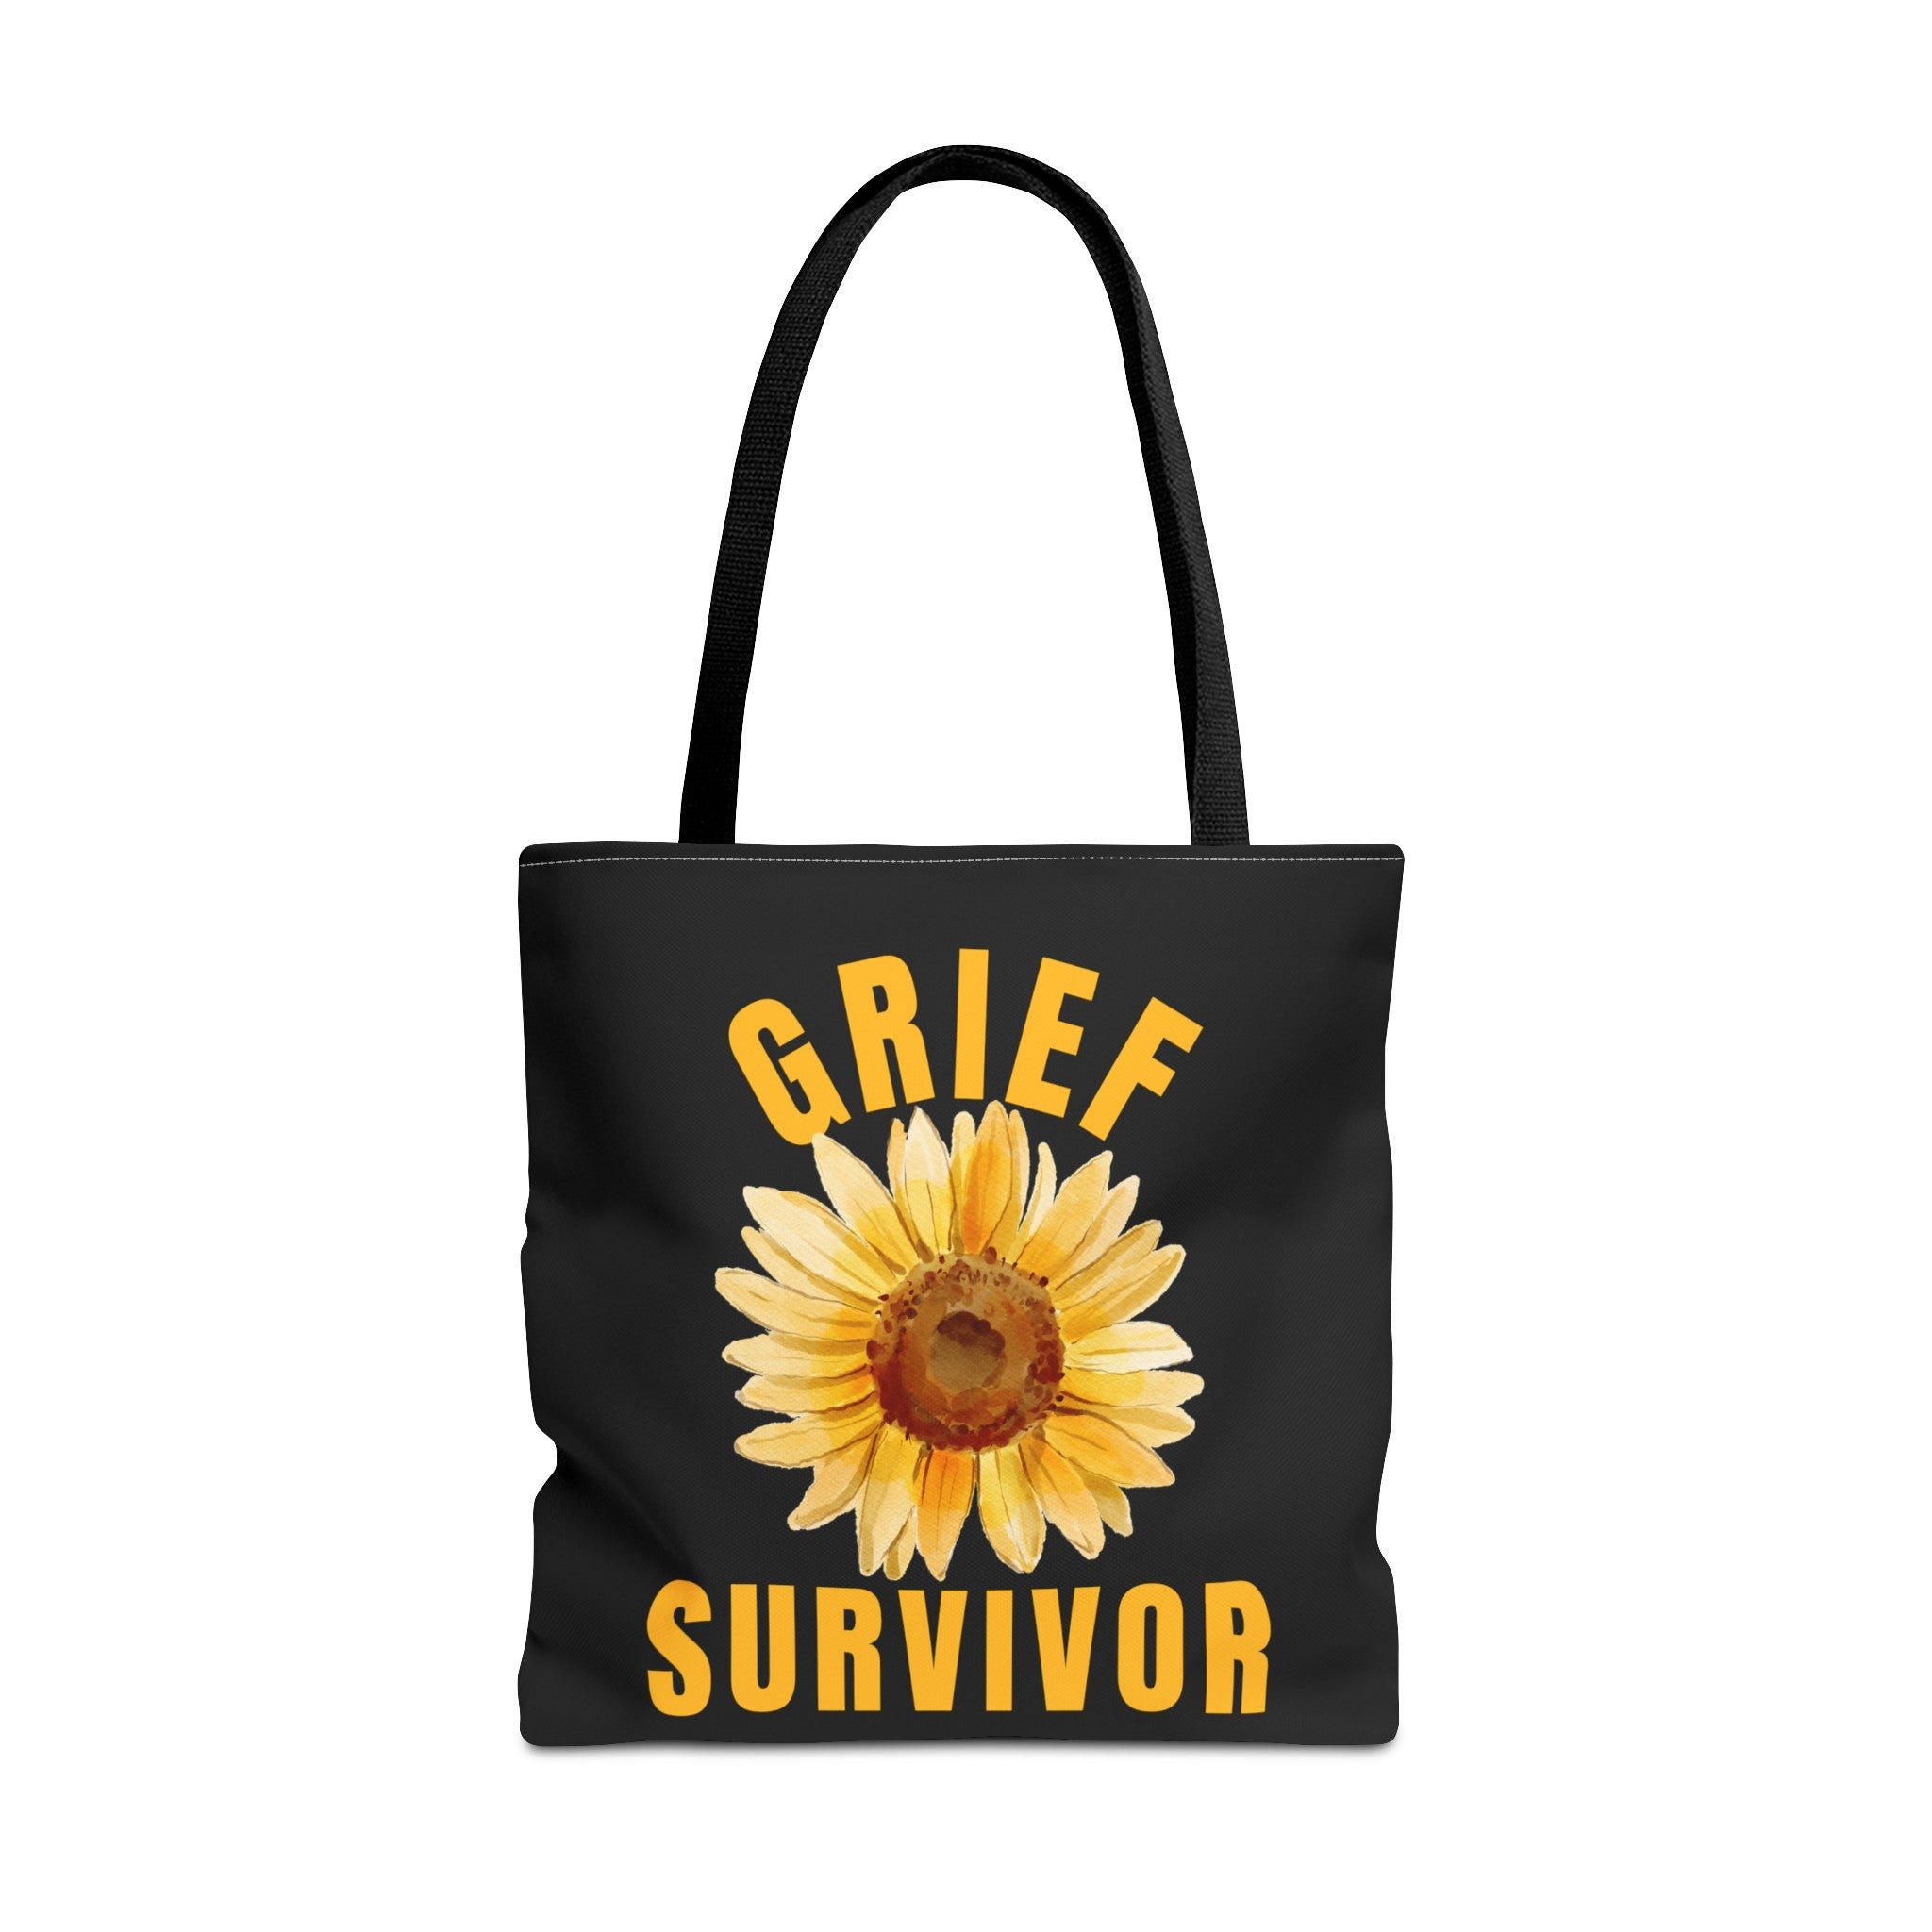 Grief Survivor Black Tote Bag